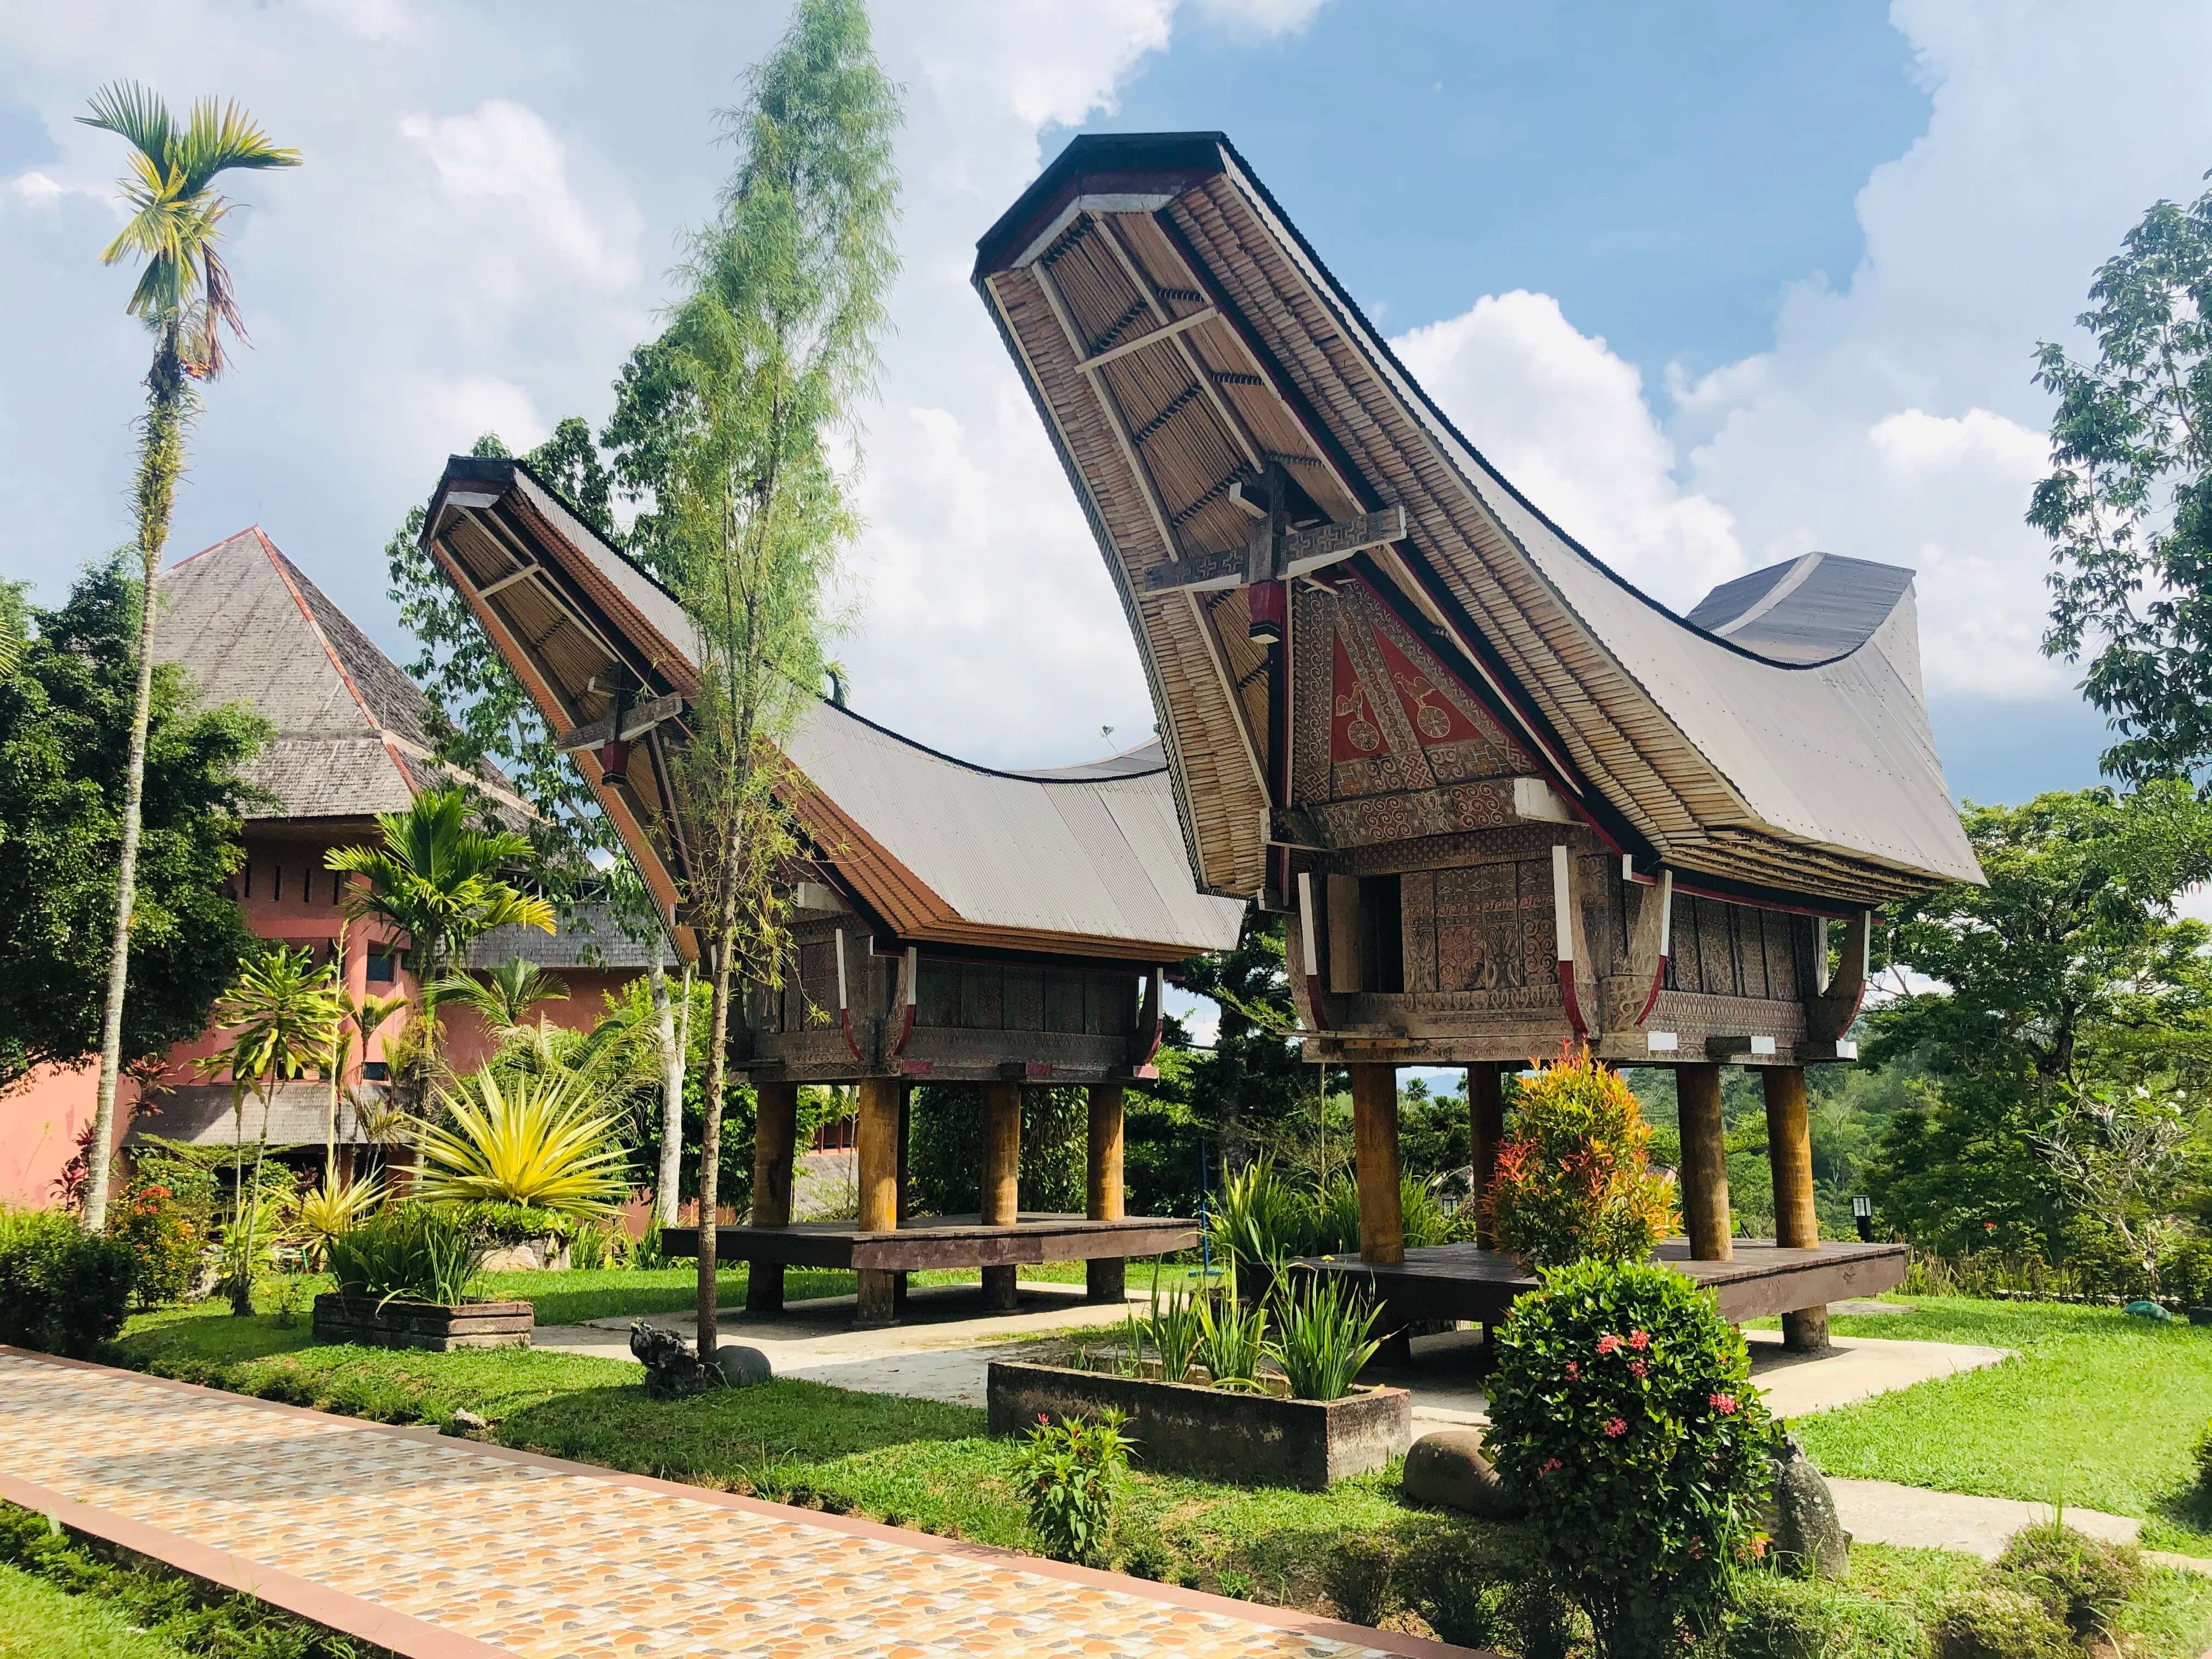 Maison traditionnelle de Sulawesi